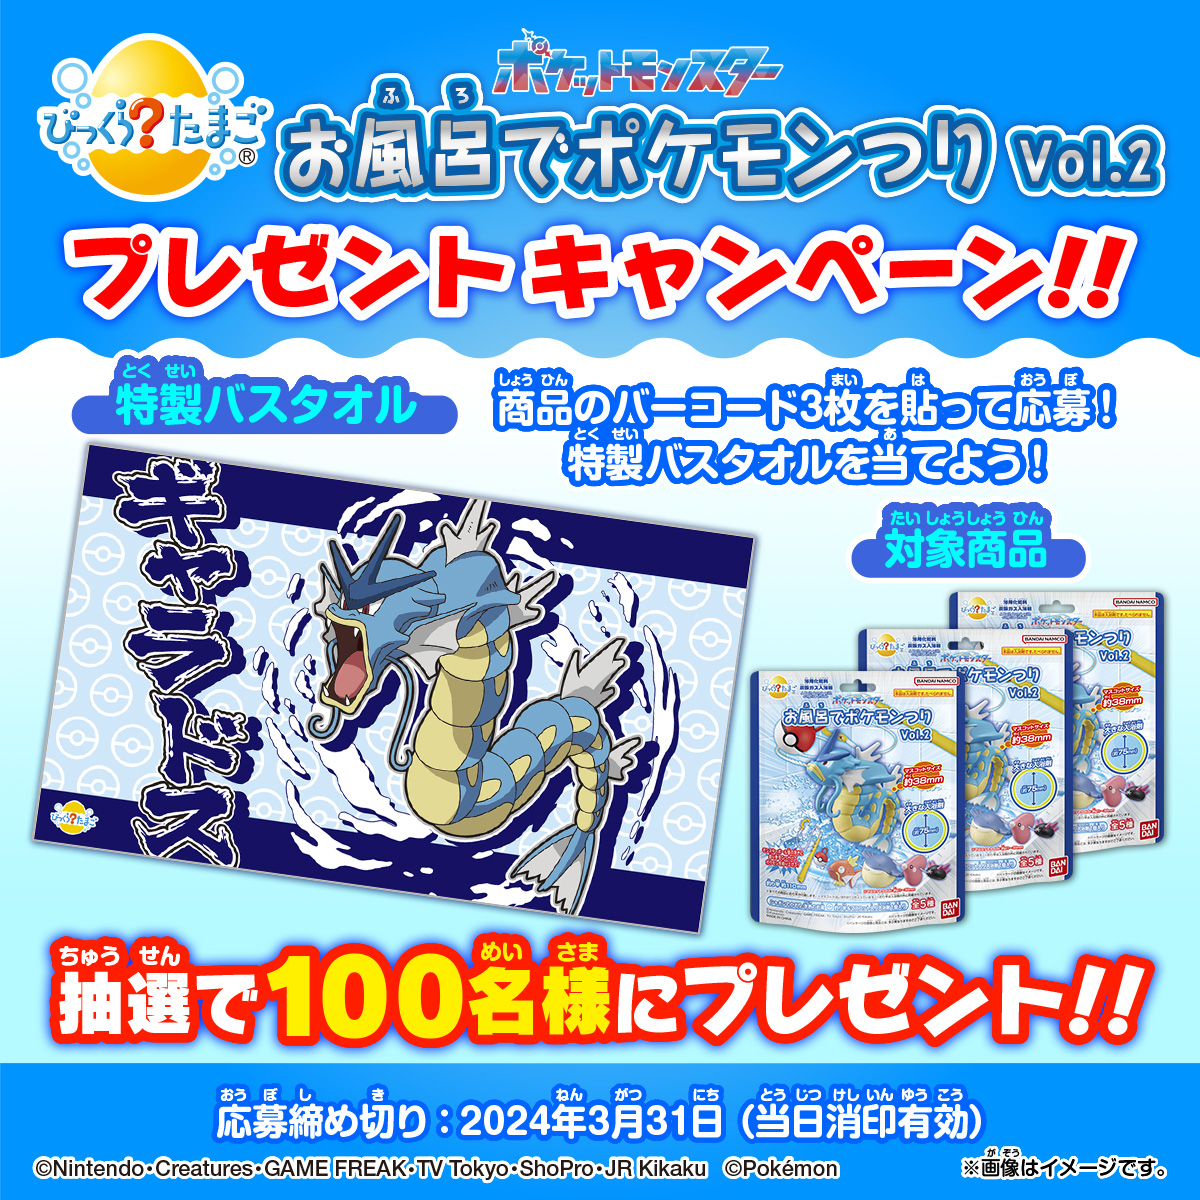 ポケットモンスター お風呂でポケモンつり Vol.2 プレゼントキャンペーン！！